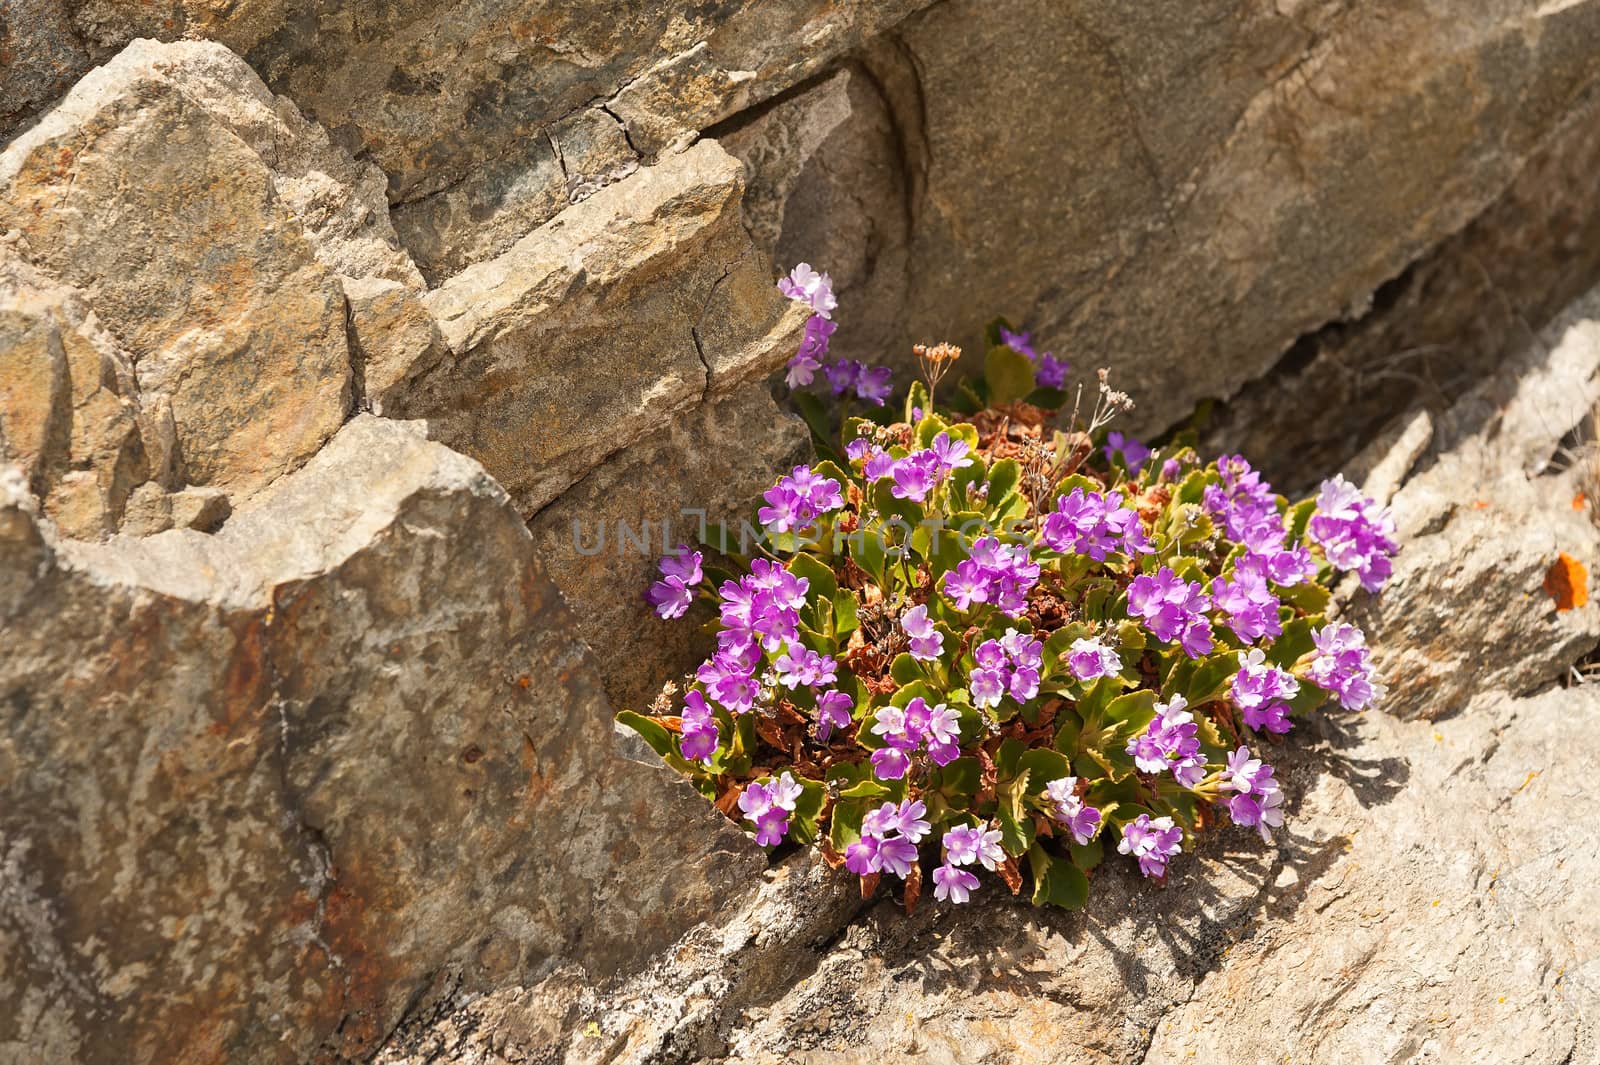 Alpine flowers on a stone background by Coffeechocolates